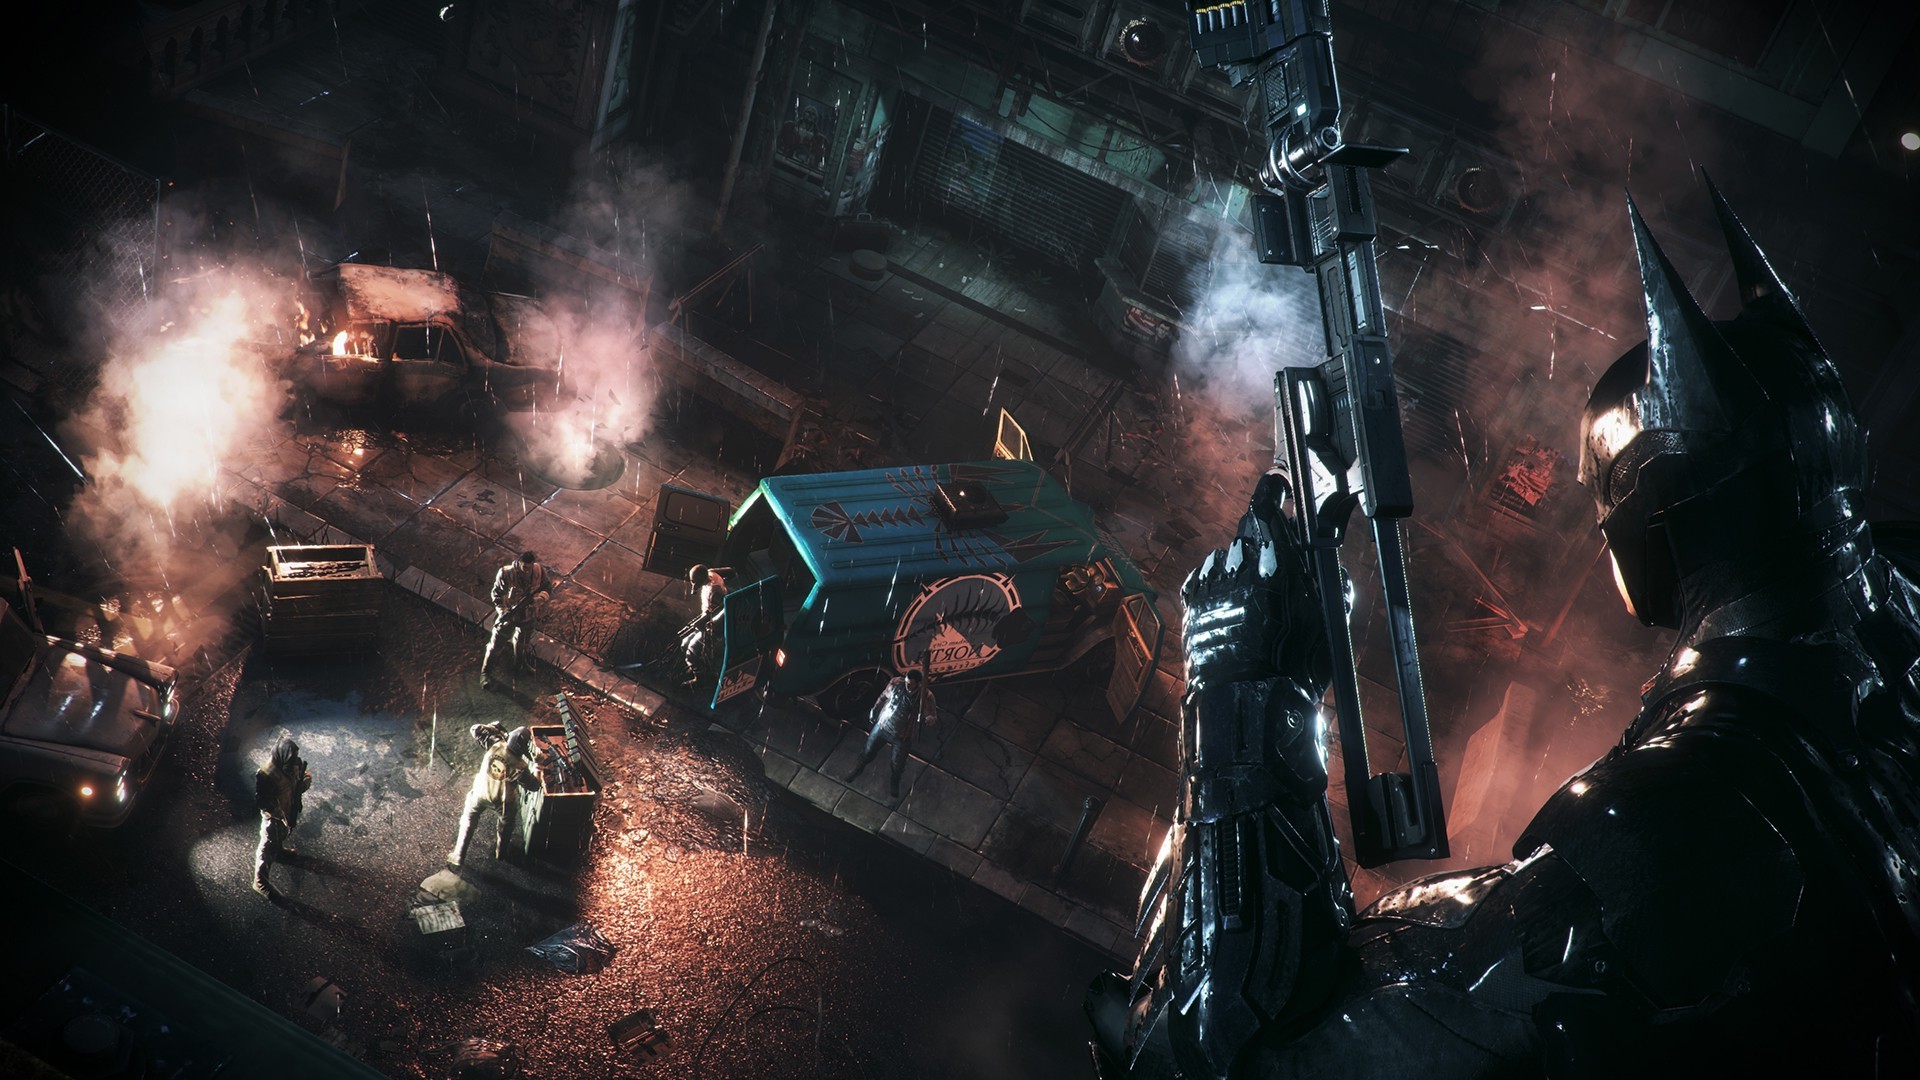 Batman, Batman: Arkham Knight, Gotham City, Video Games Wallpaper